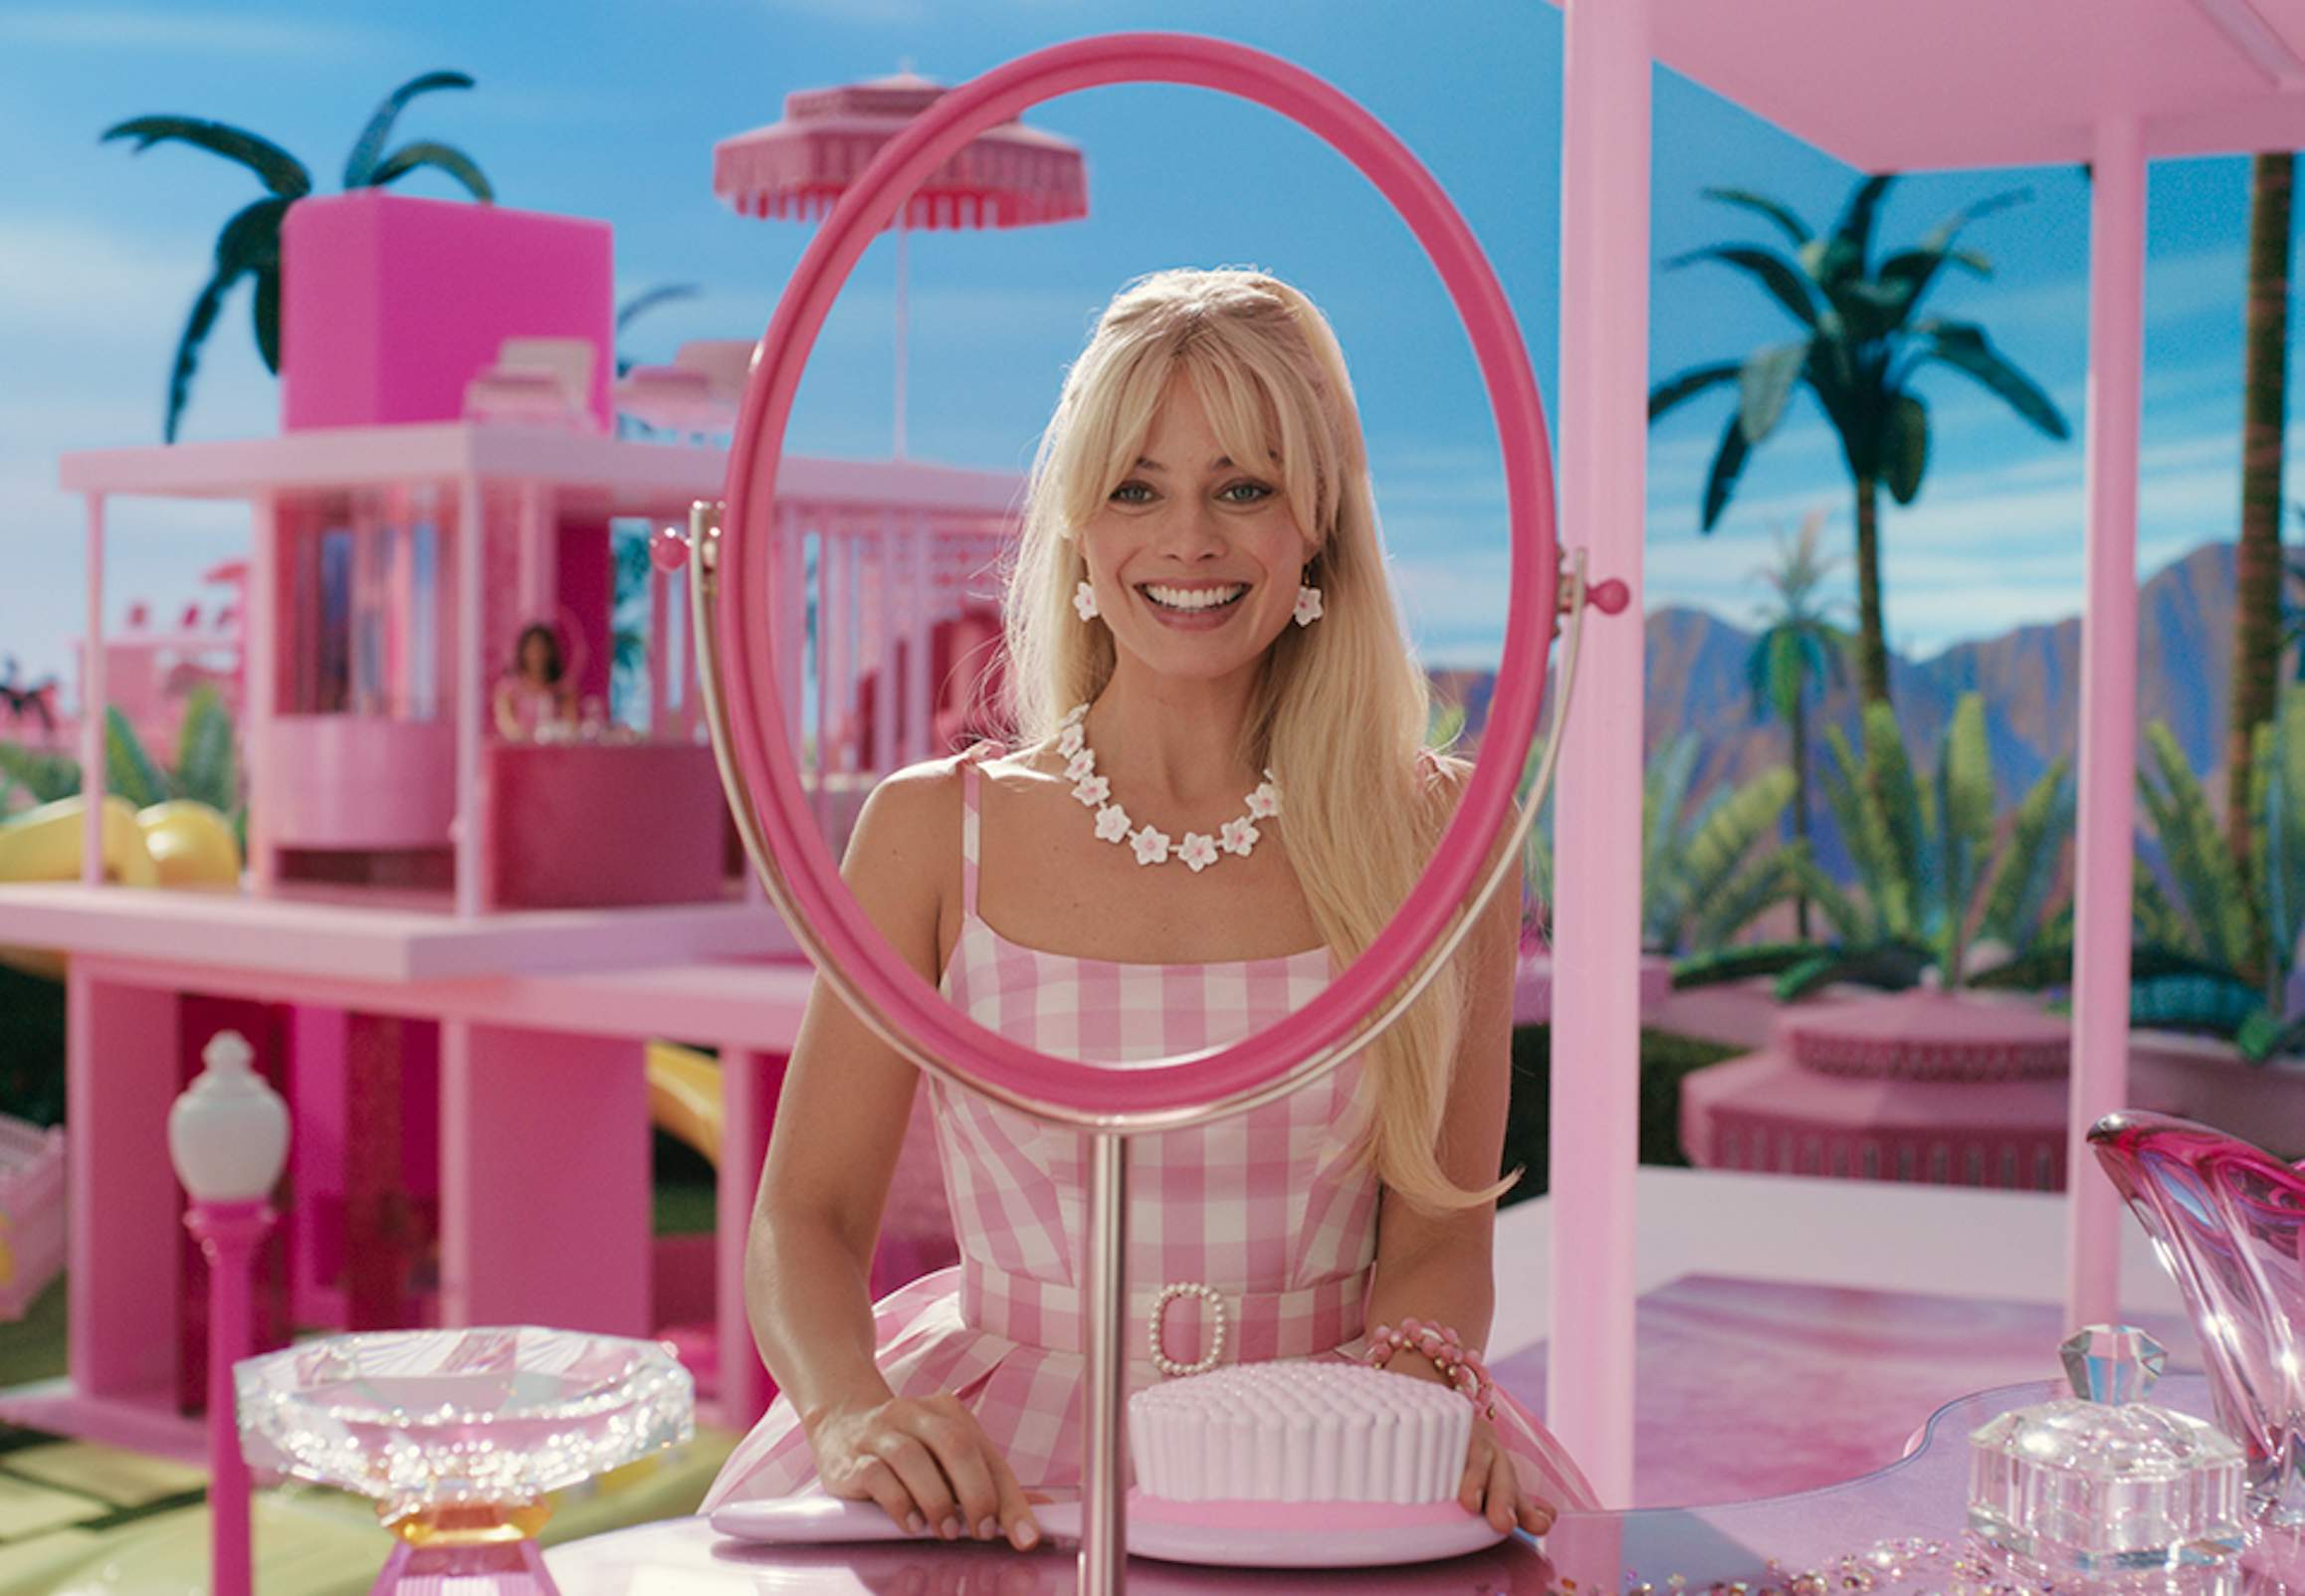 disharmoni mareridt Udelukke Barbie film | 9 seje facts om den nye Barbie-film | Woman.dk